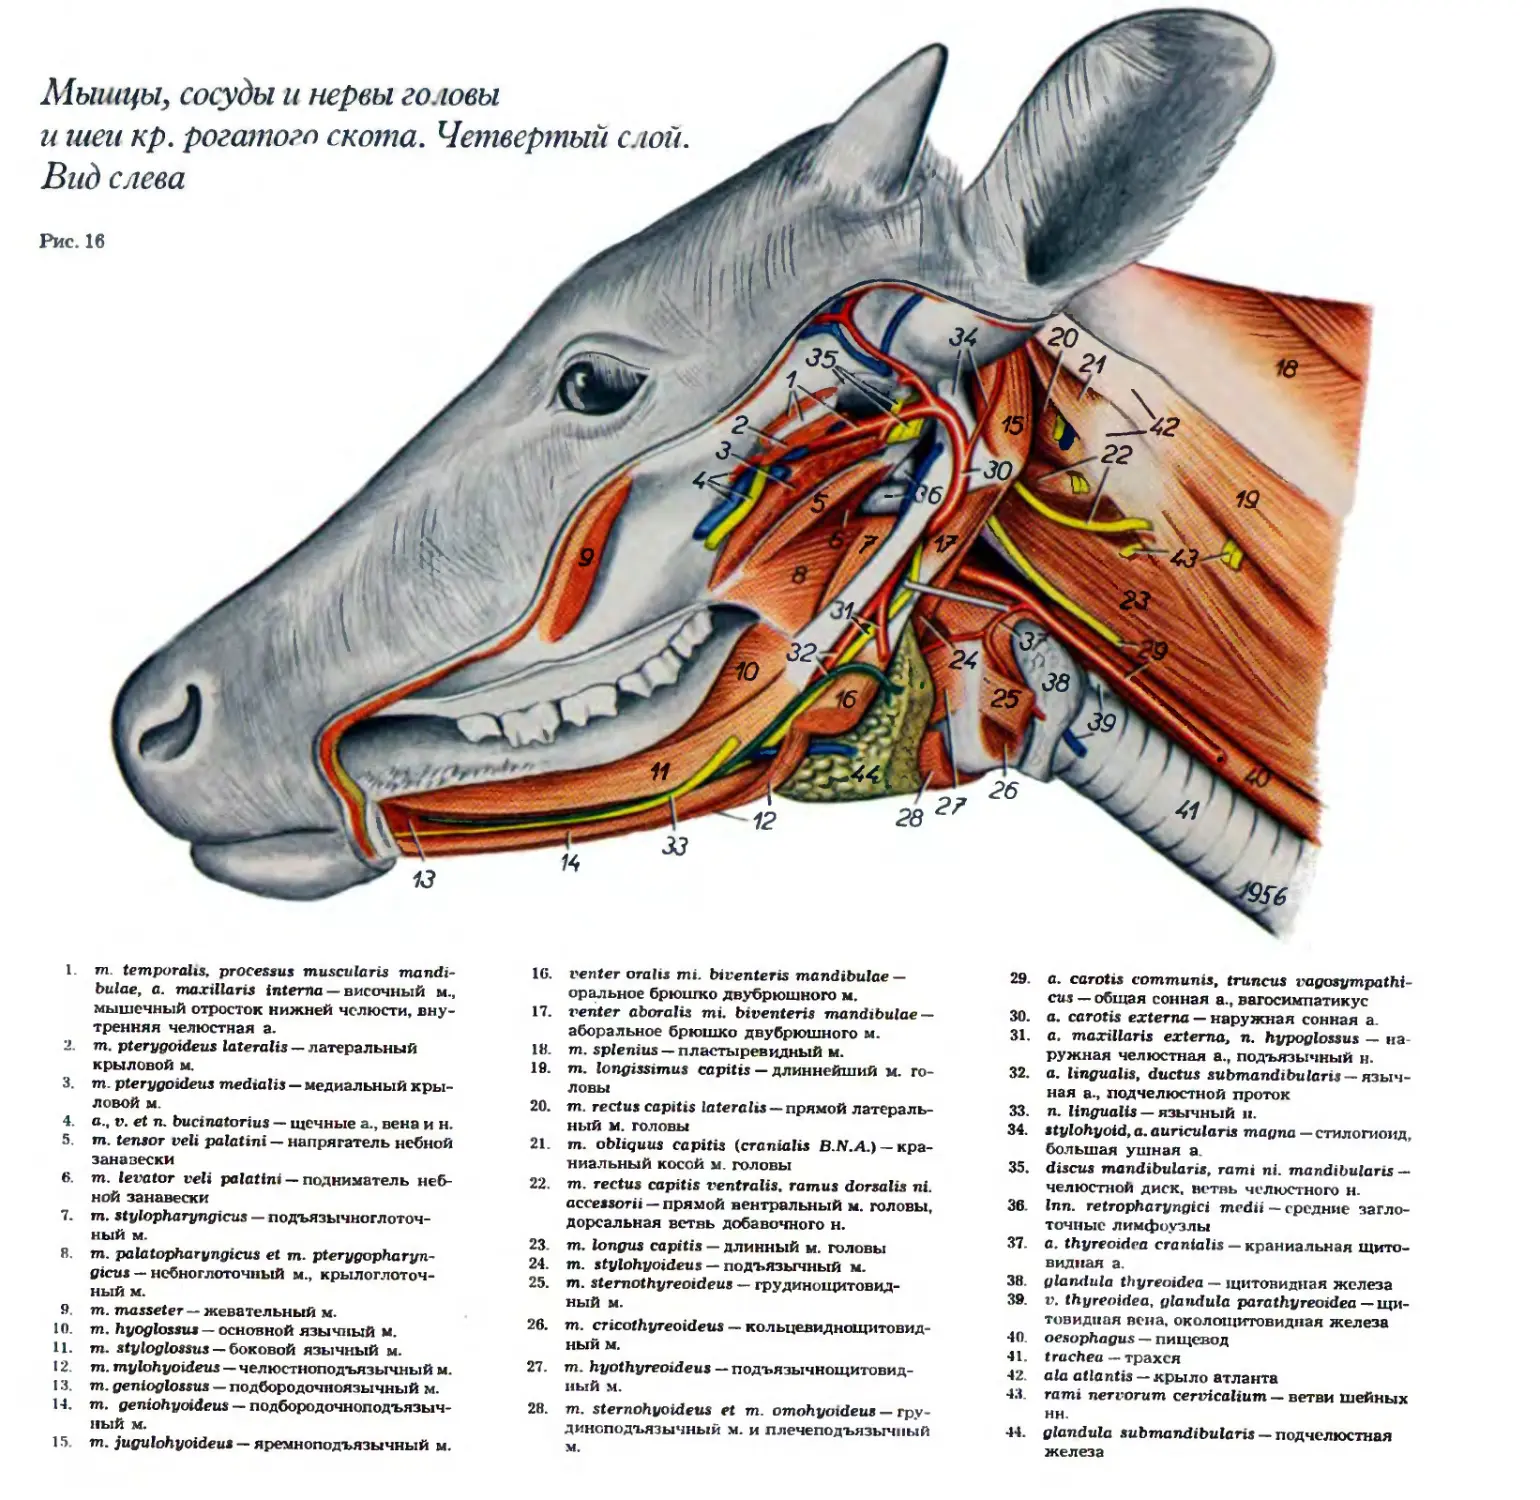 Артерия у свиньи где находится фото. Строение КРС анатомия. Анатомия шеи КРС. Мышцы головы крупного рогатого скота. Строение мышц КРС.